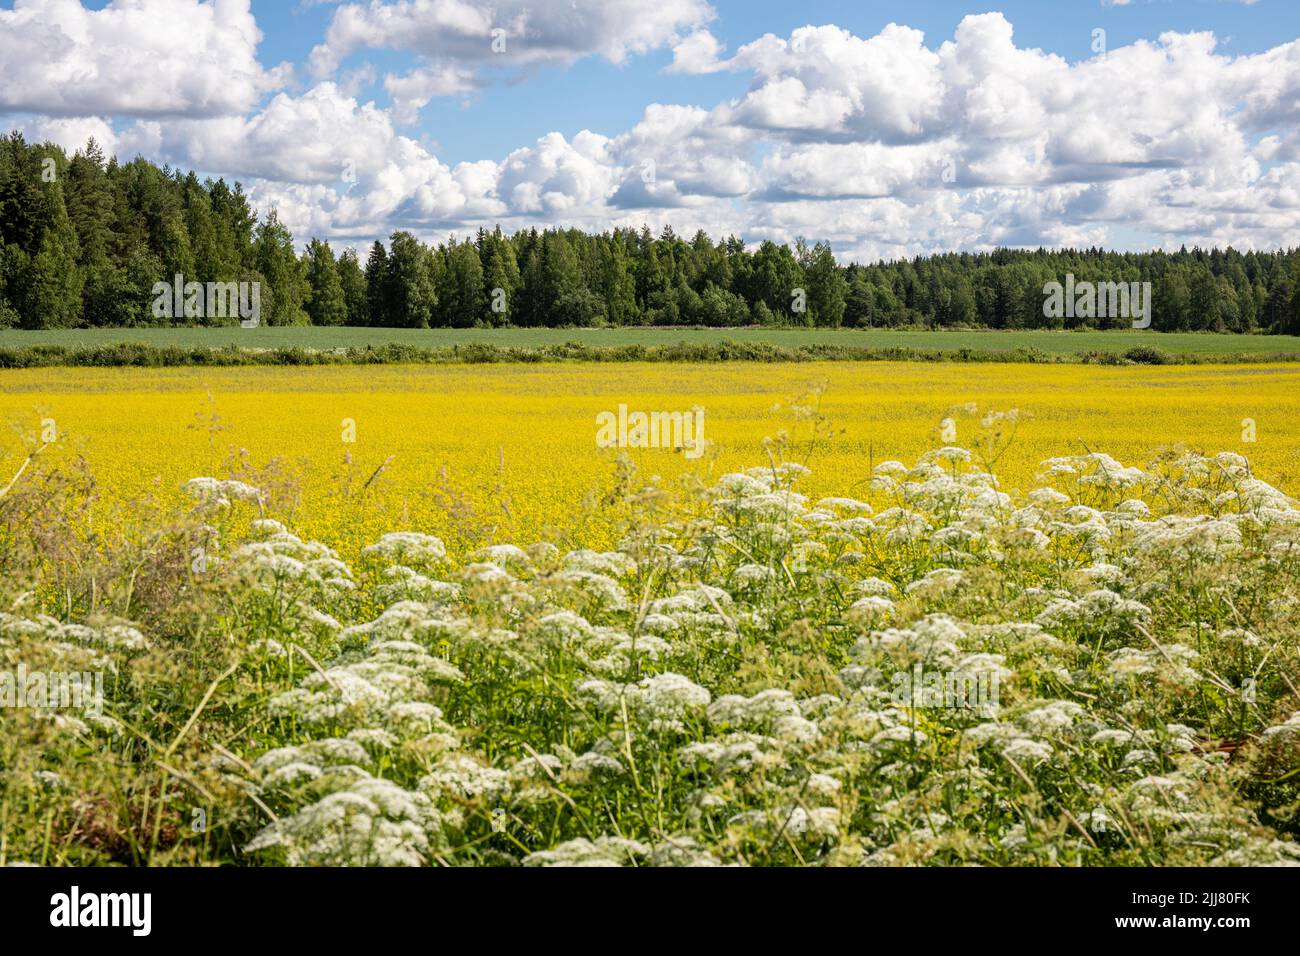 Paysage rural. Plantes en bordure de route, champ de canola, champ d'avoine et forêt. Orivesi, Finlande Banque D'Images